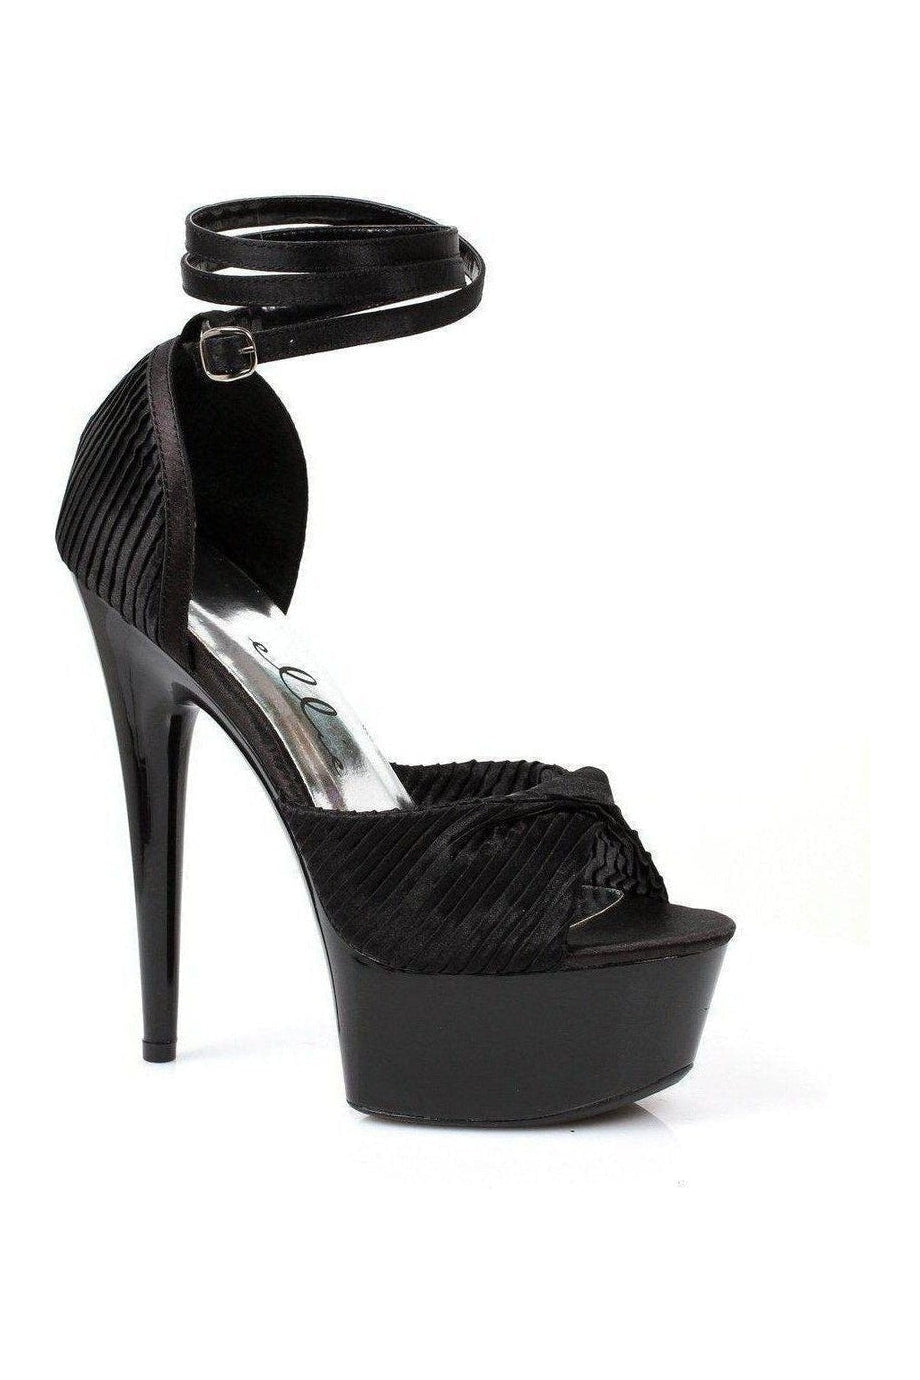 609-CHIFFON Platform Sandal | Black Patent-Ellie Shoes-SEXYSHOES.COM